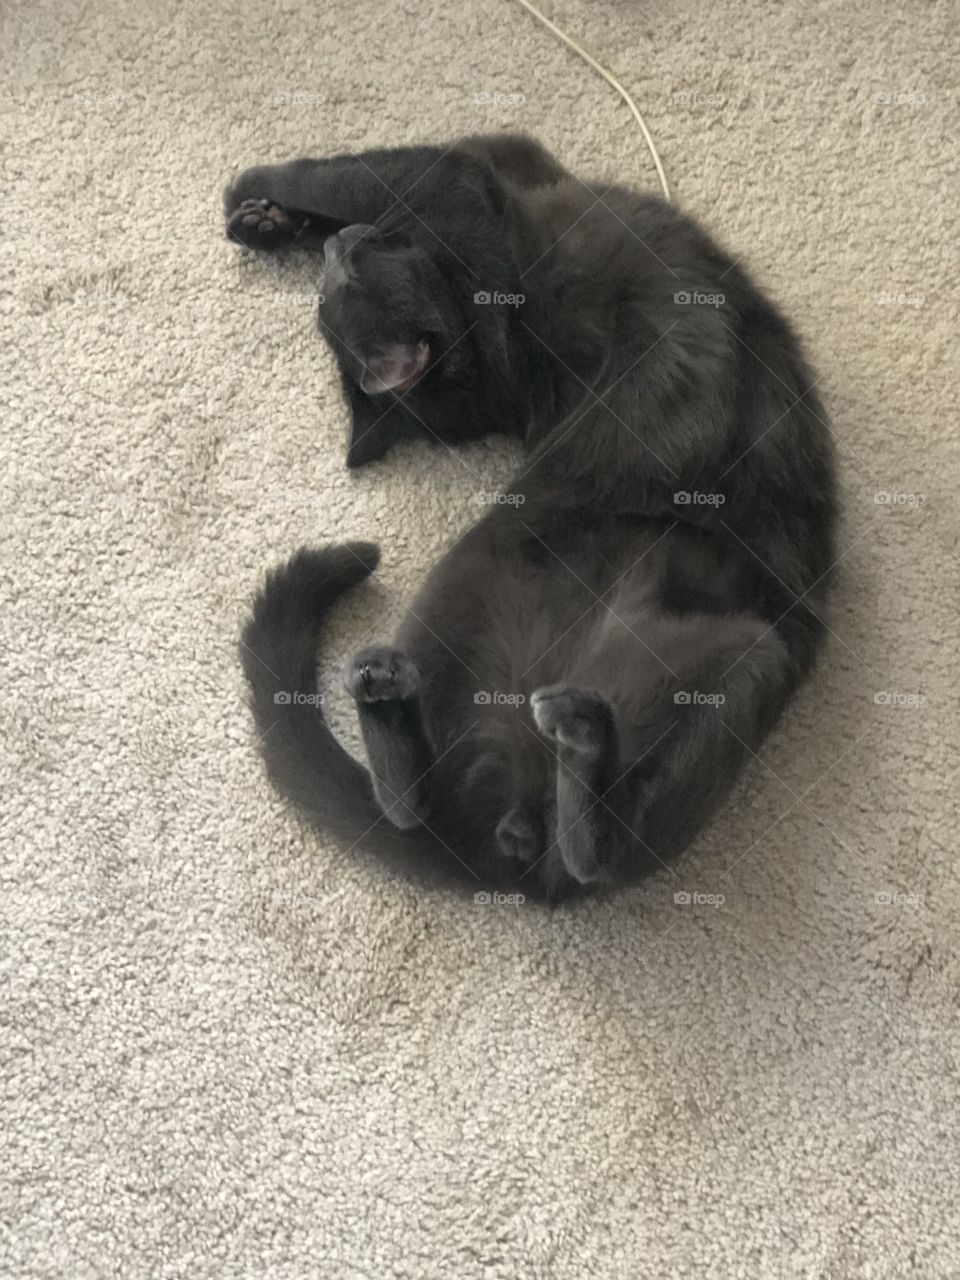 Cat nap cute kitty yoga sleep position 